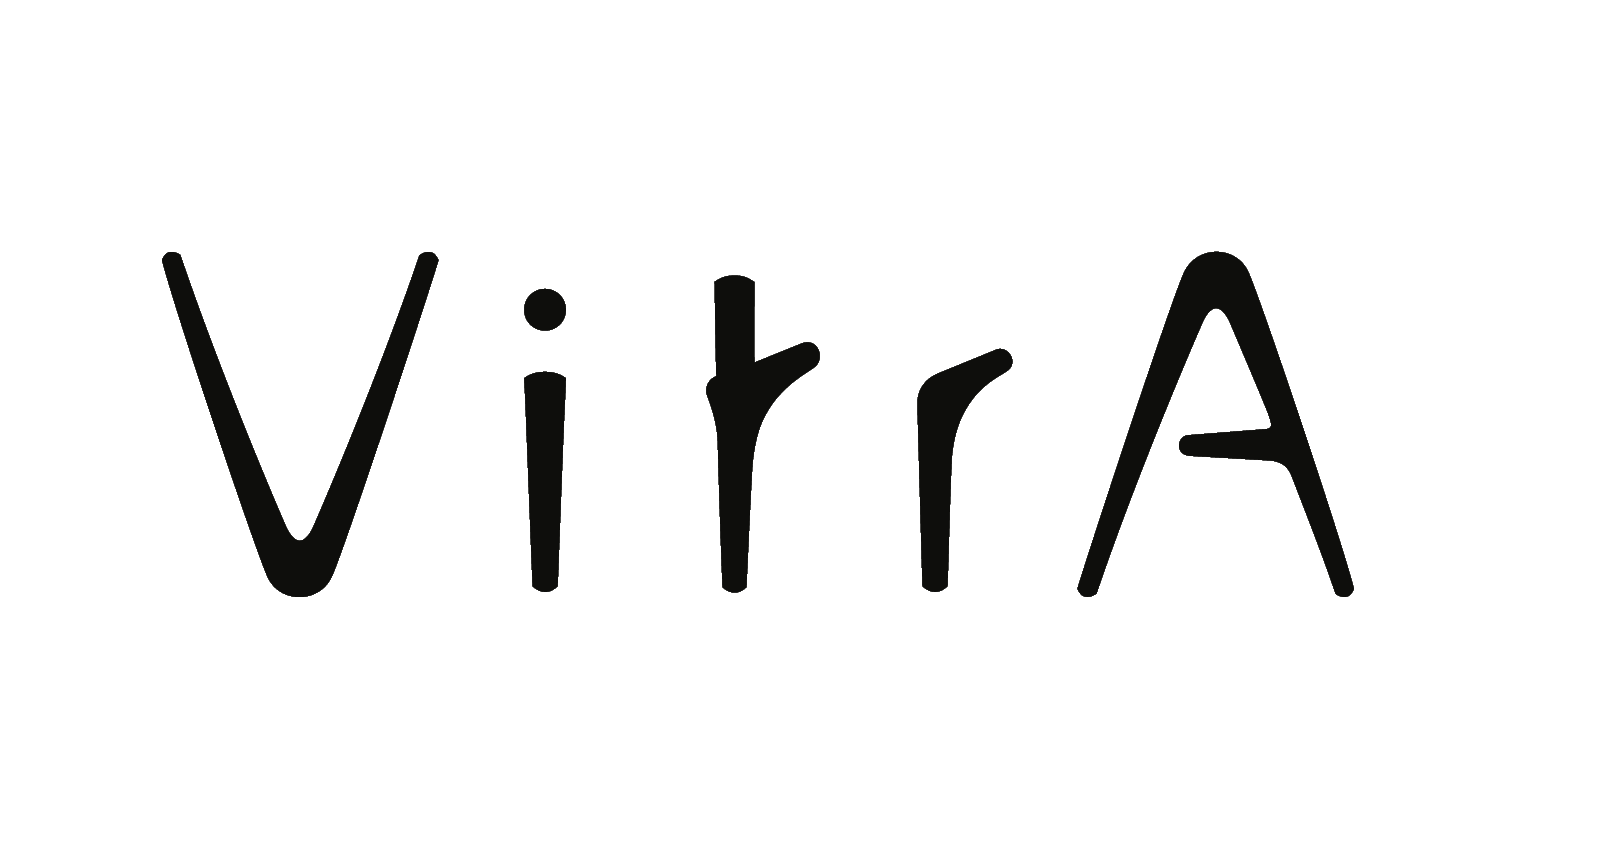 The Vitra logo.